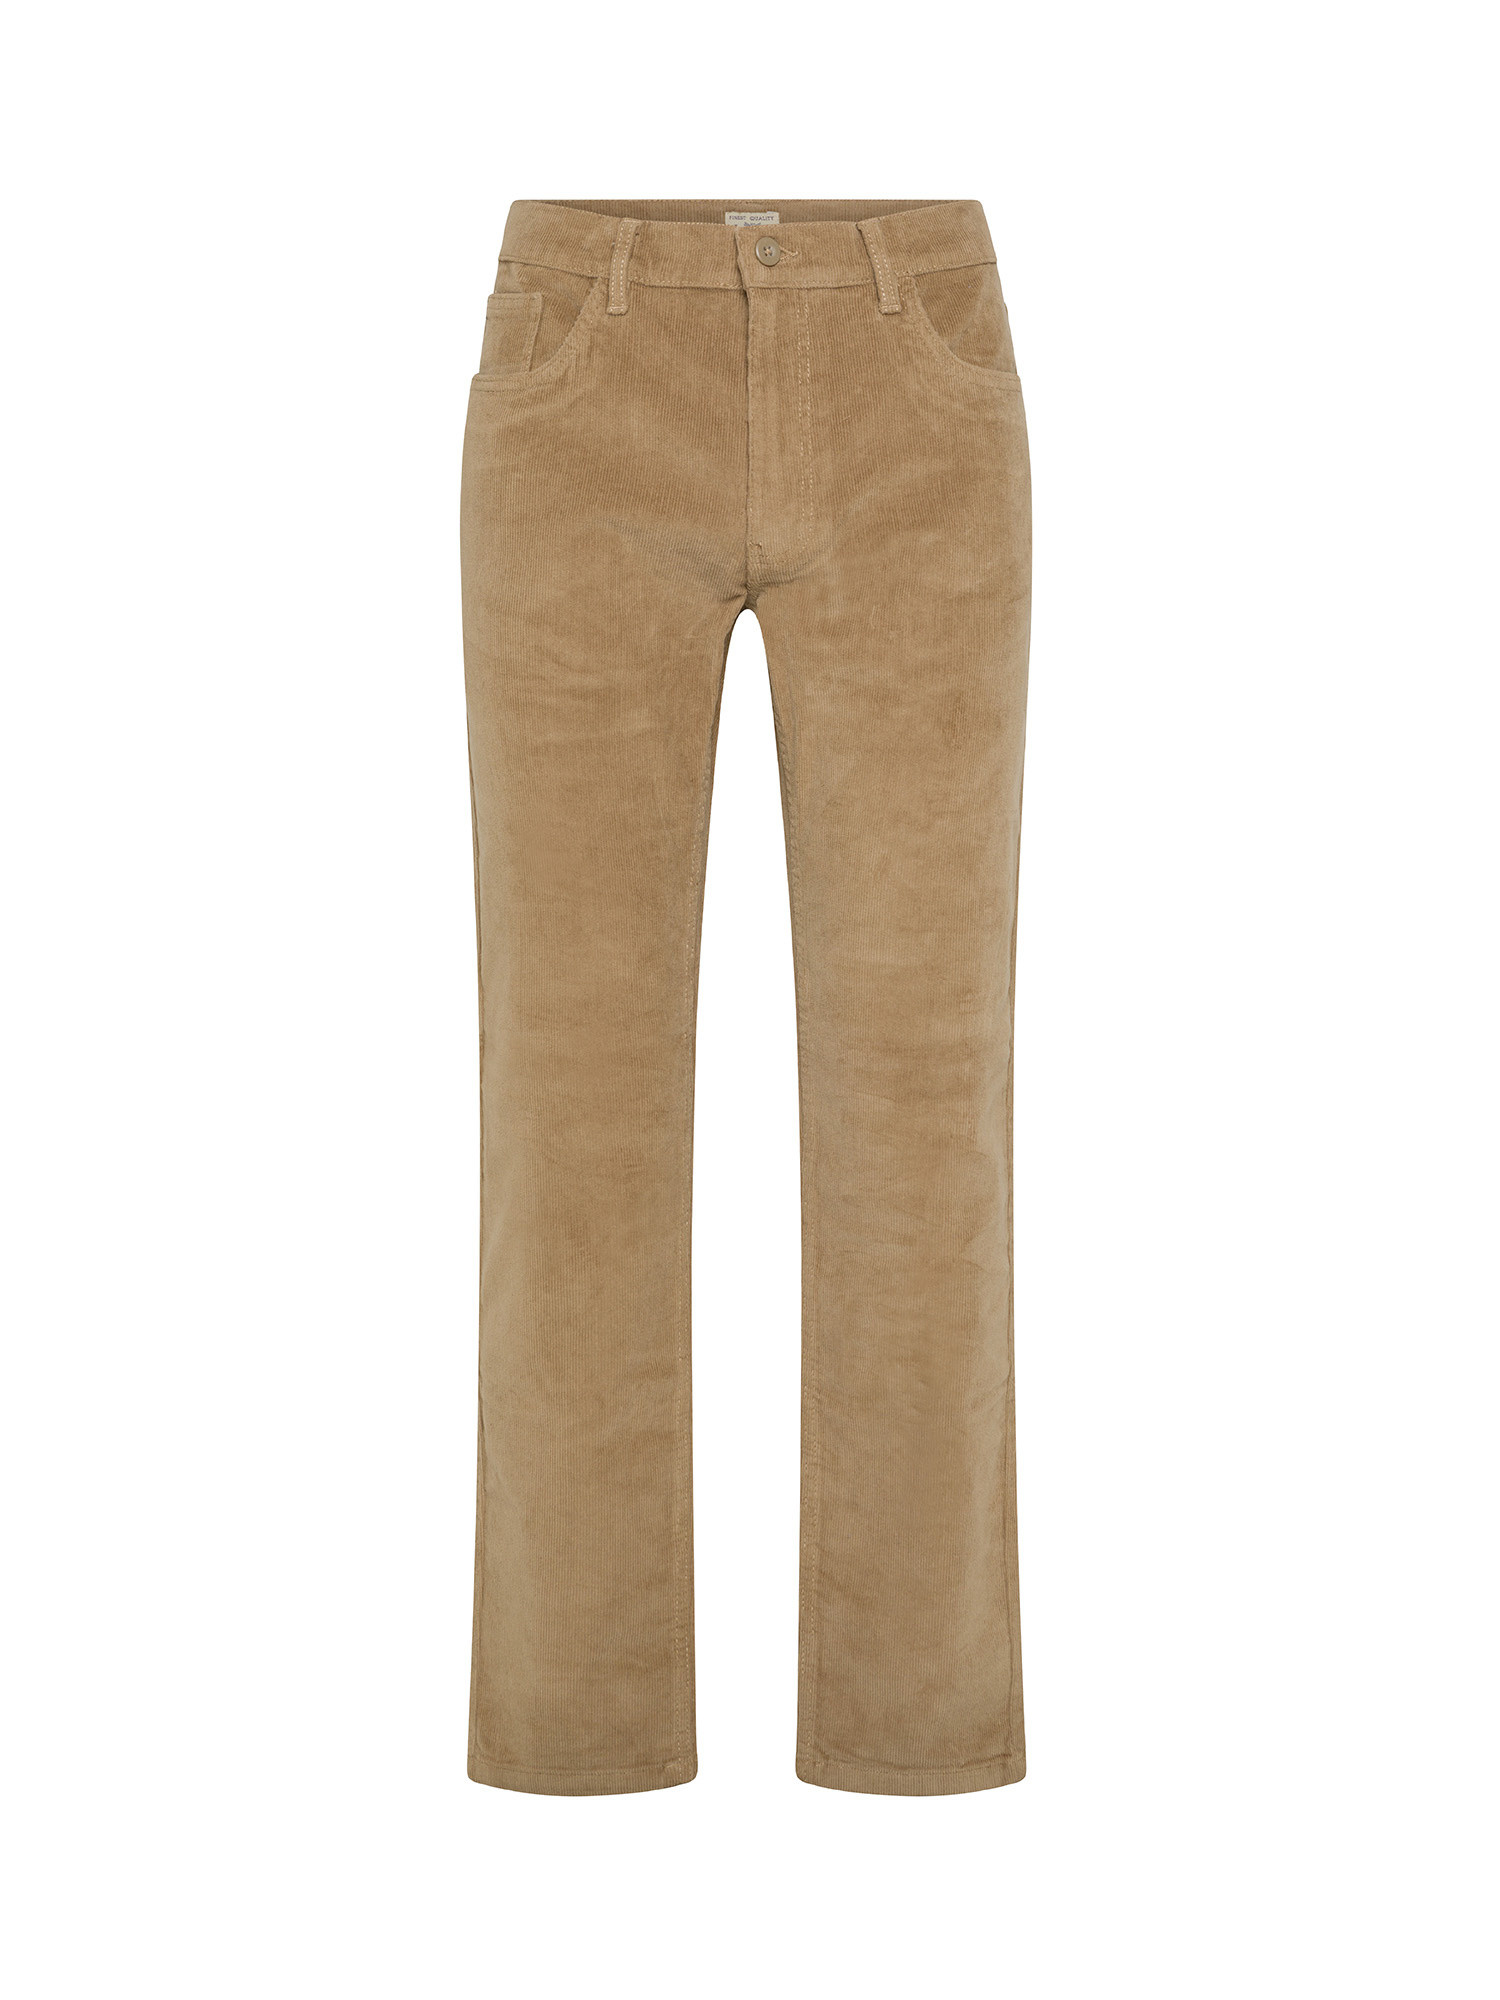 JCT - Slim fit five-pocket velvet trousers, Brown, large image number 0